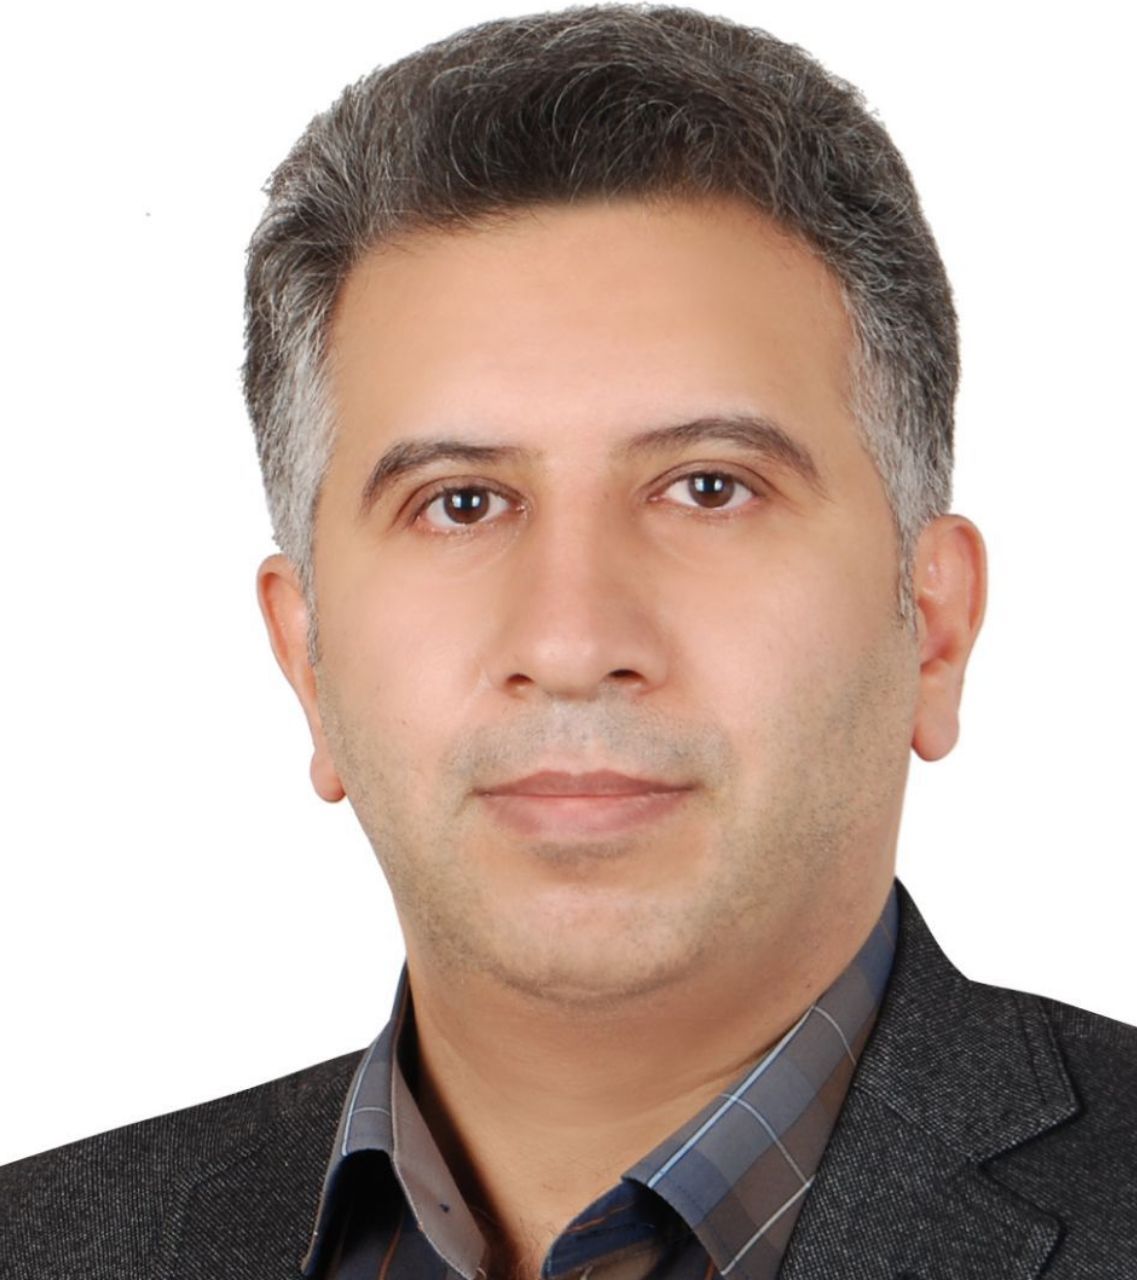 Mahdi Yeganeh